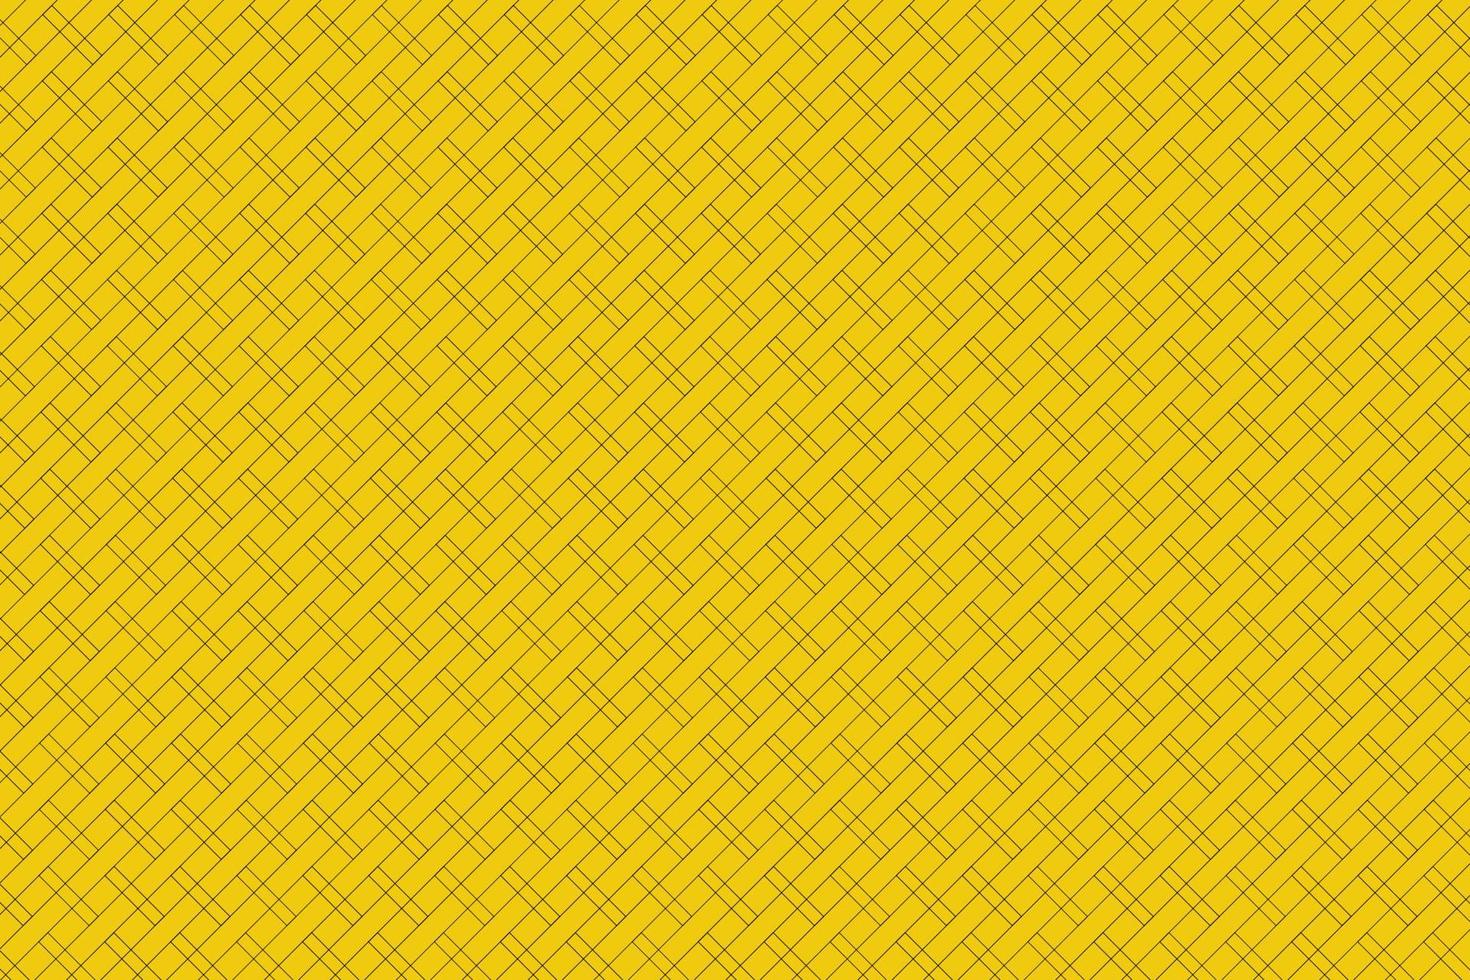 fundo amarelo listras pretas se cruzam em canais de tamanhos iguais podem ser usados para projetar trabalhos em papéis de parede vetoriais etc vetor